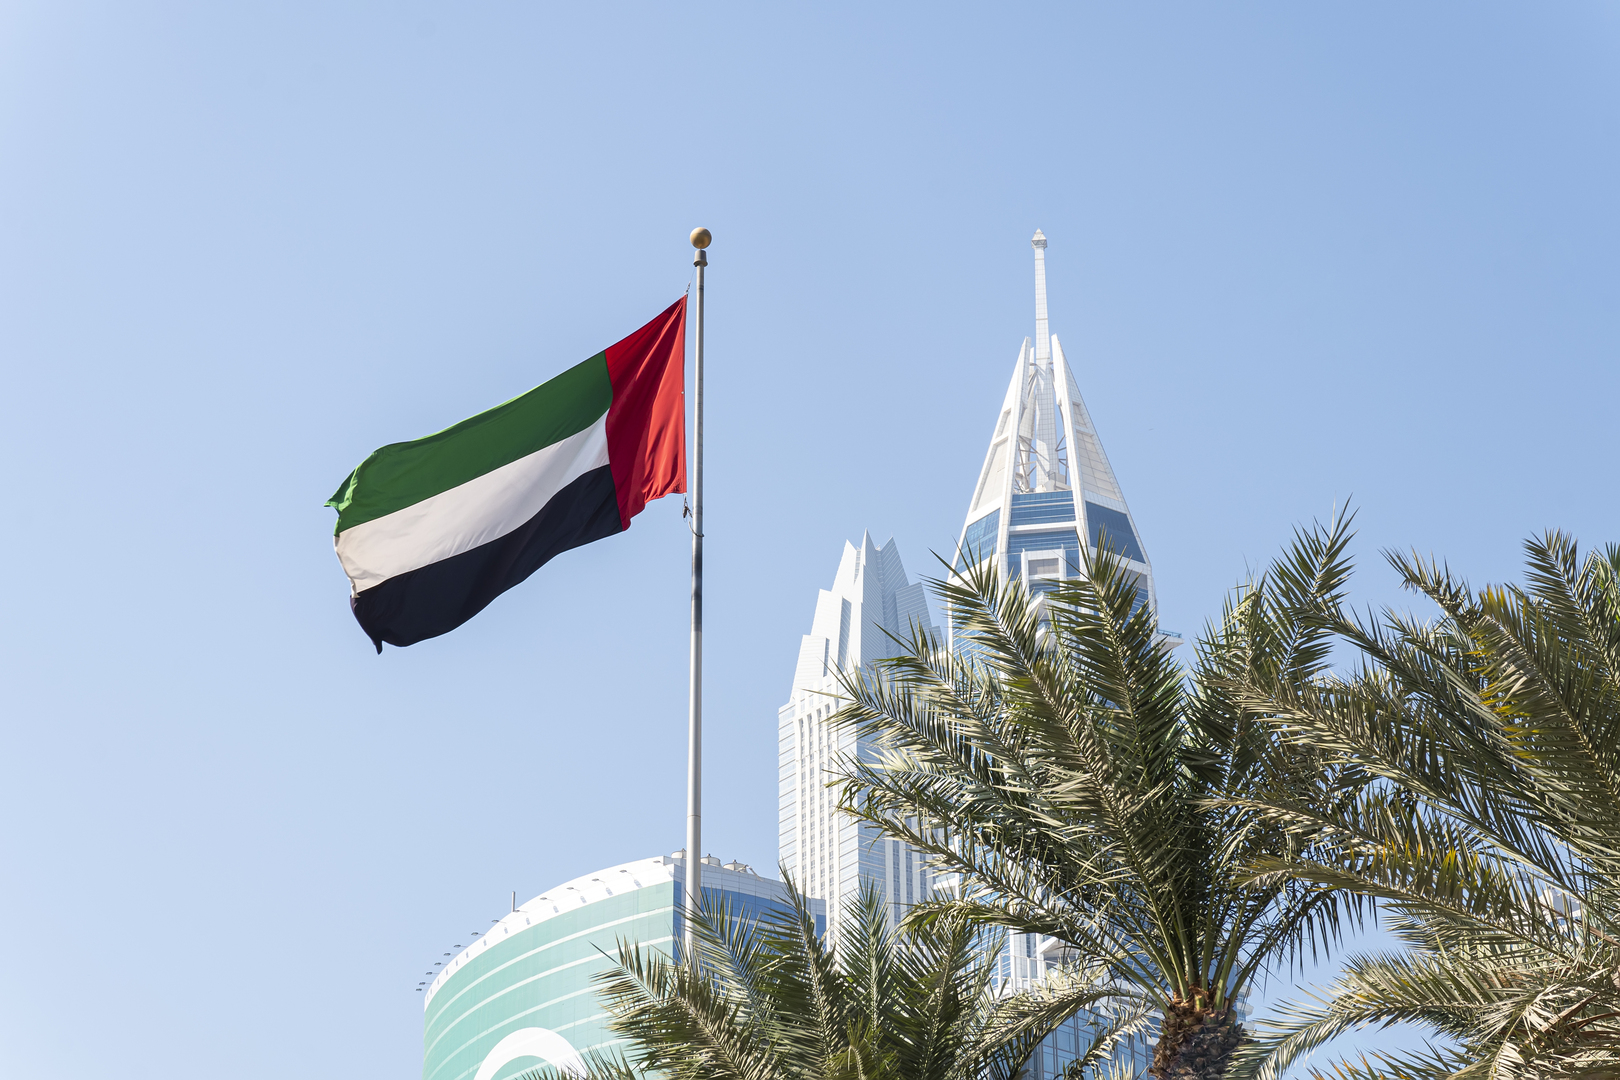 وفاة الشيخ طحنون بن محمد آل نهيان والرئيس الإماراتي ينعاه